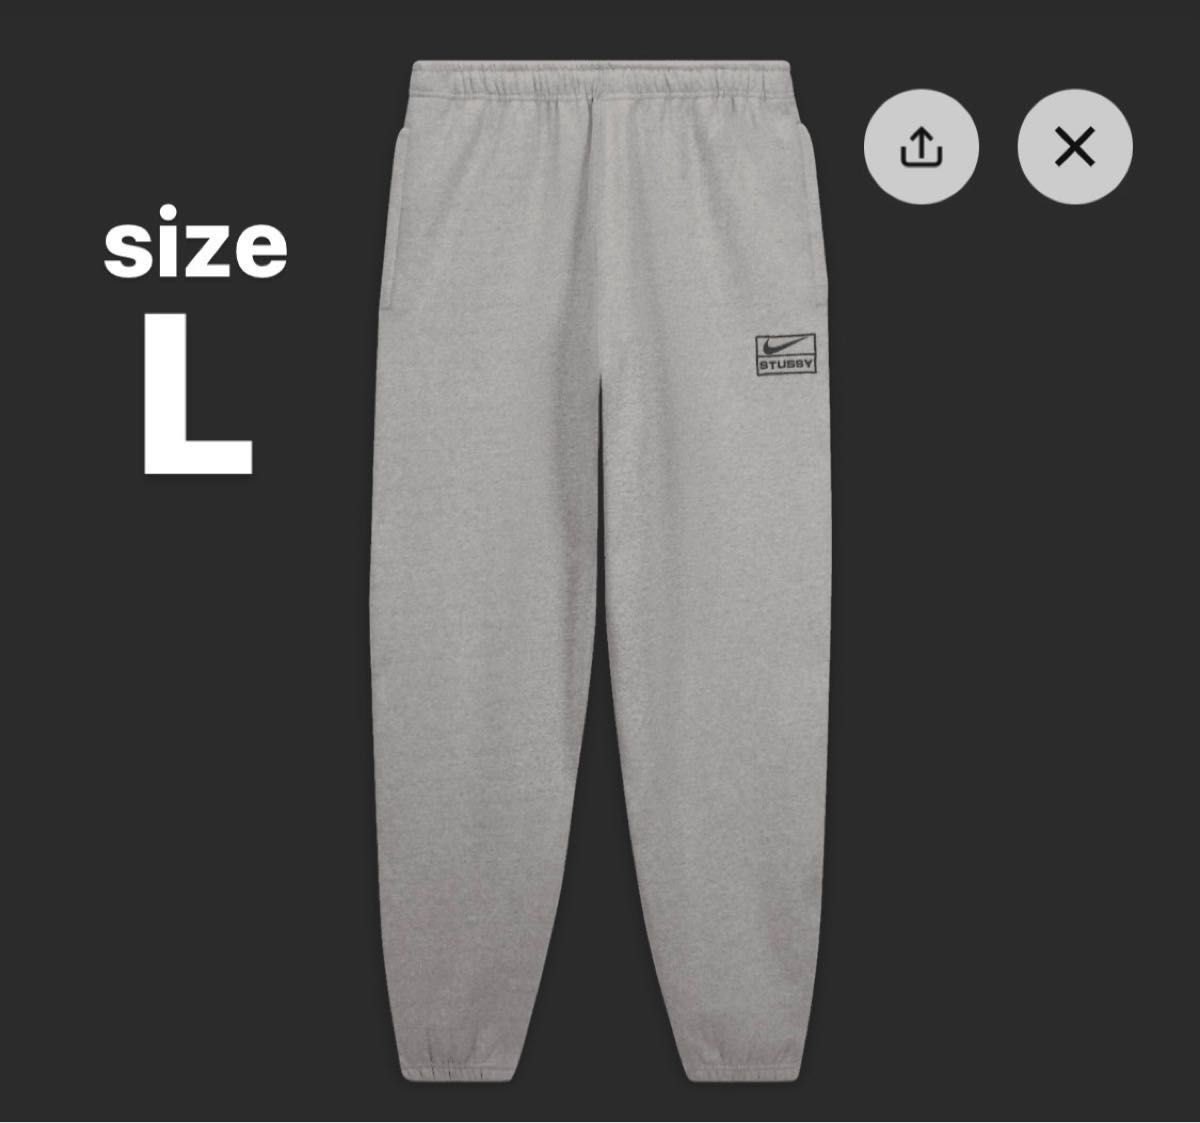 Stussy x Nike Fleece Pants Grey ステューシー x ナイキ フリース パンツ グレー 【Lサイズ】